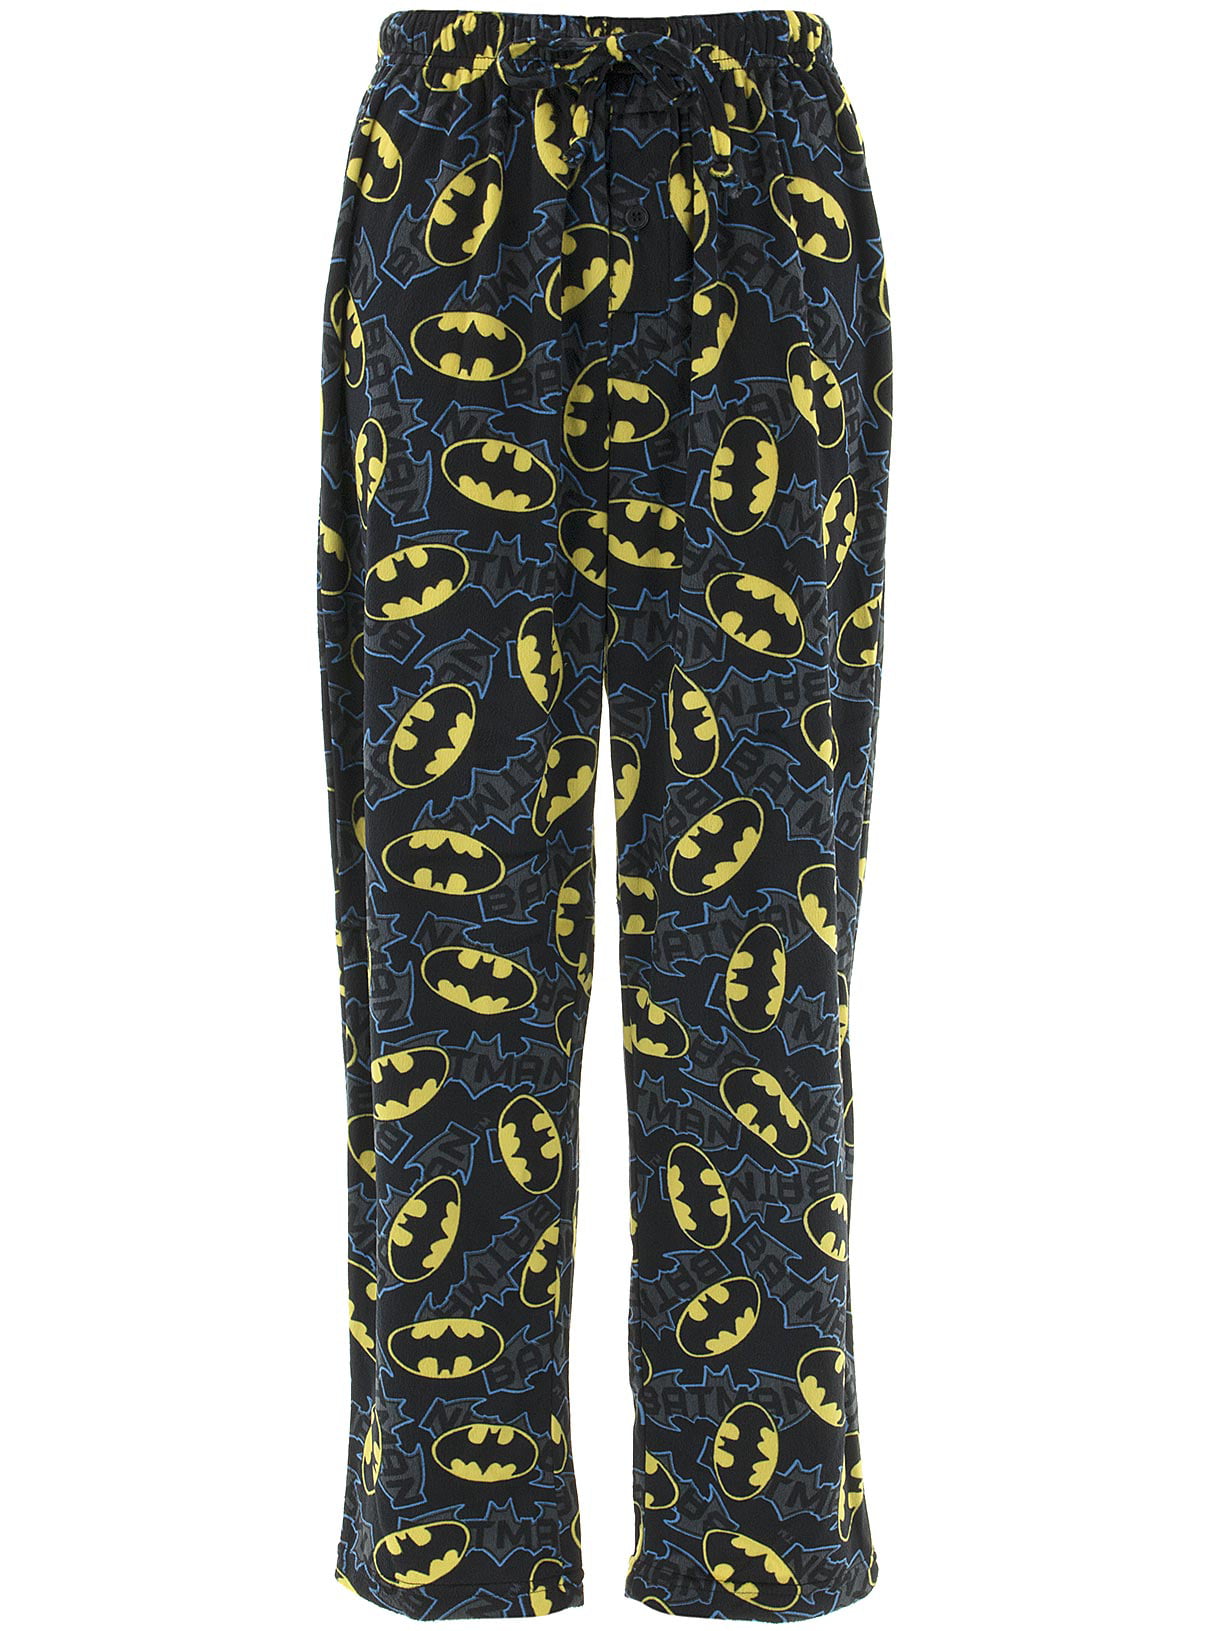 Men's Batman Symbol Sleep Set Pajamas PJs Lounge Fleece Pants S/S Tee Shirt $50 